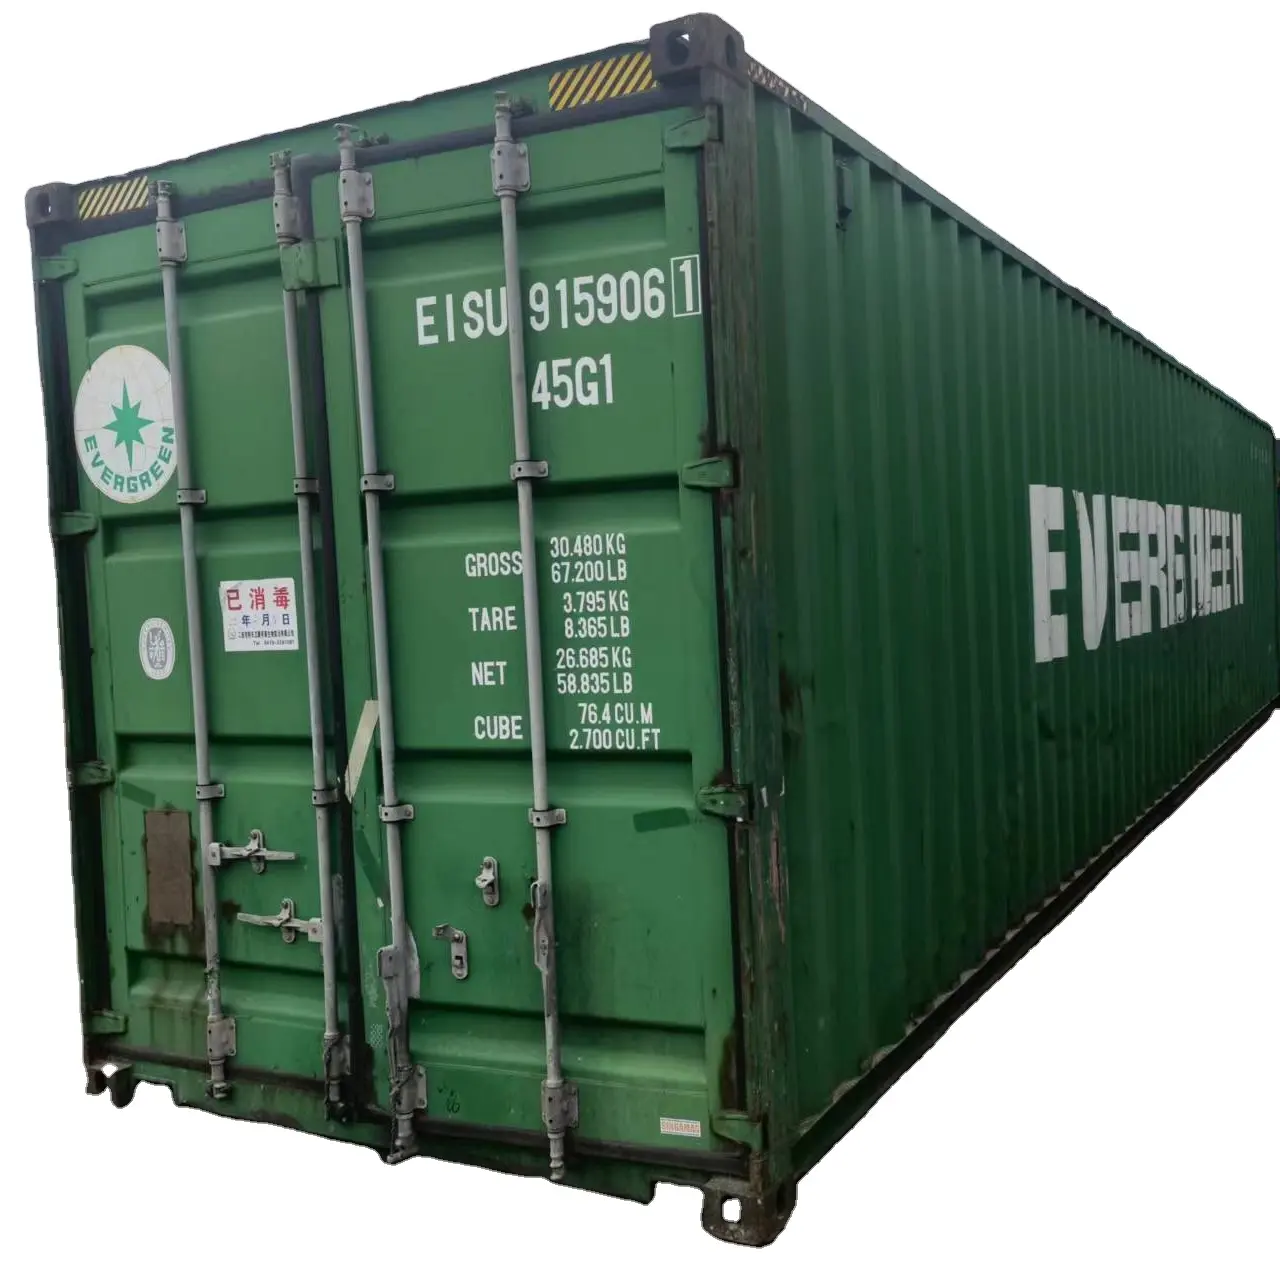 Hot Koop Van 40 High Cube Goedkope Verzending Containers